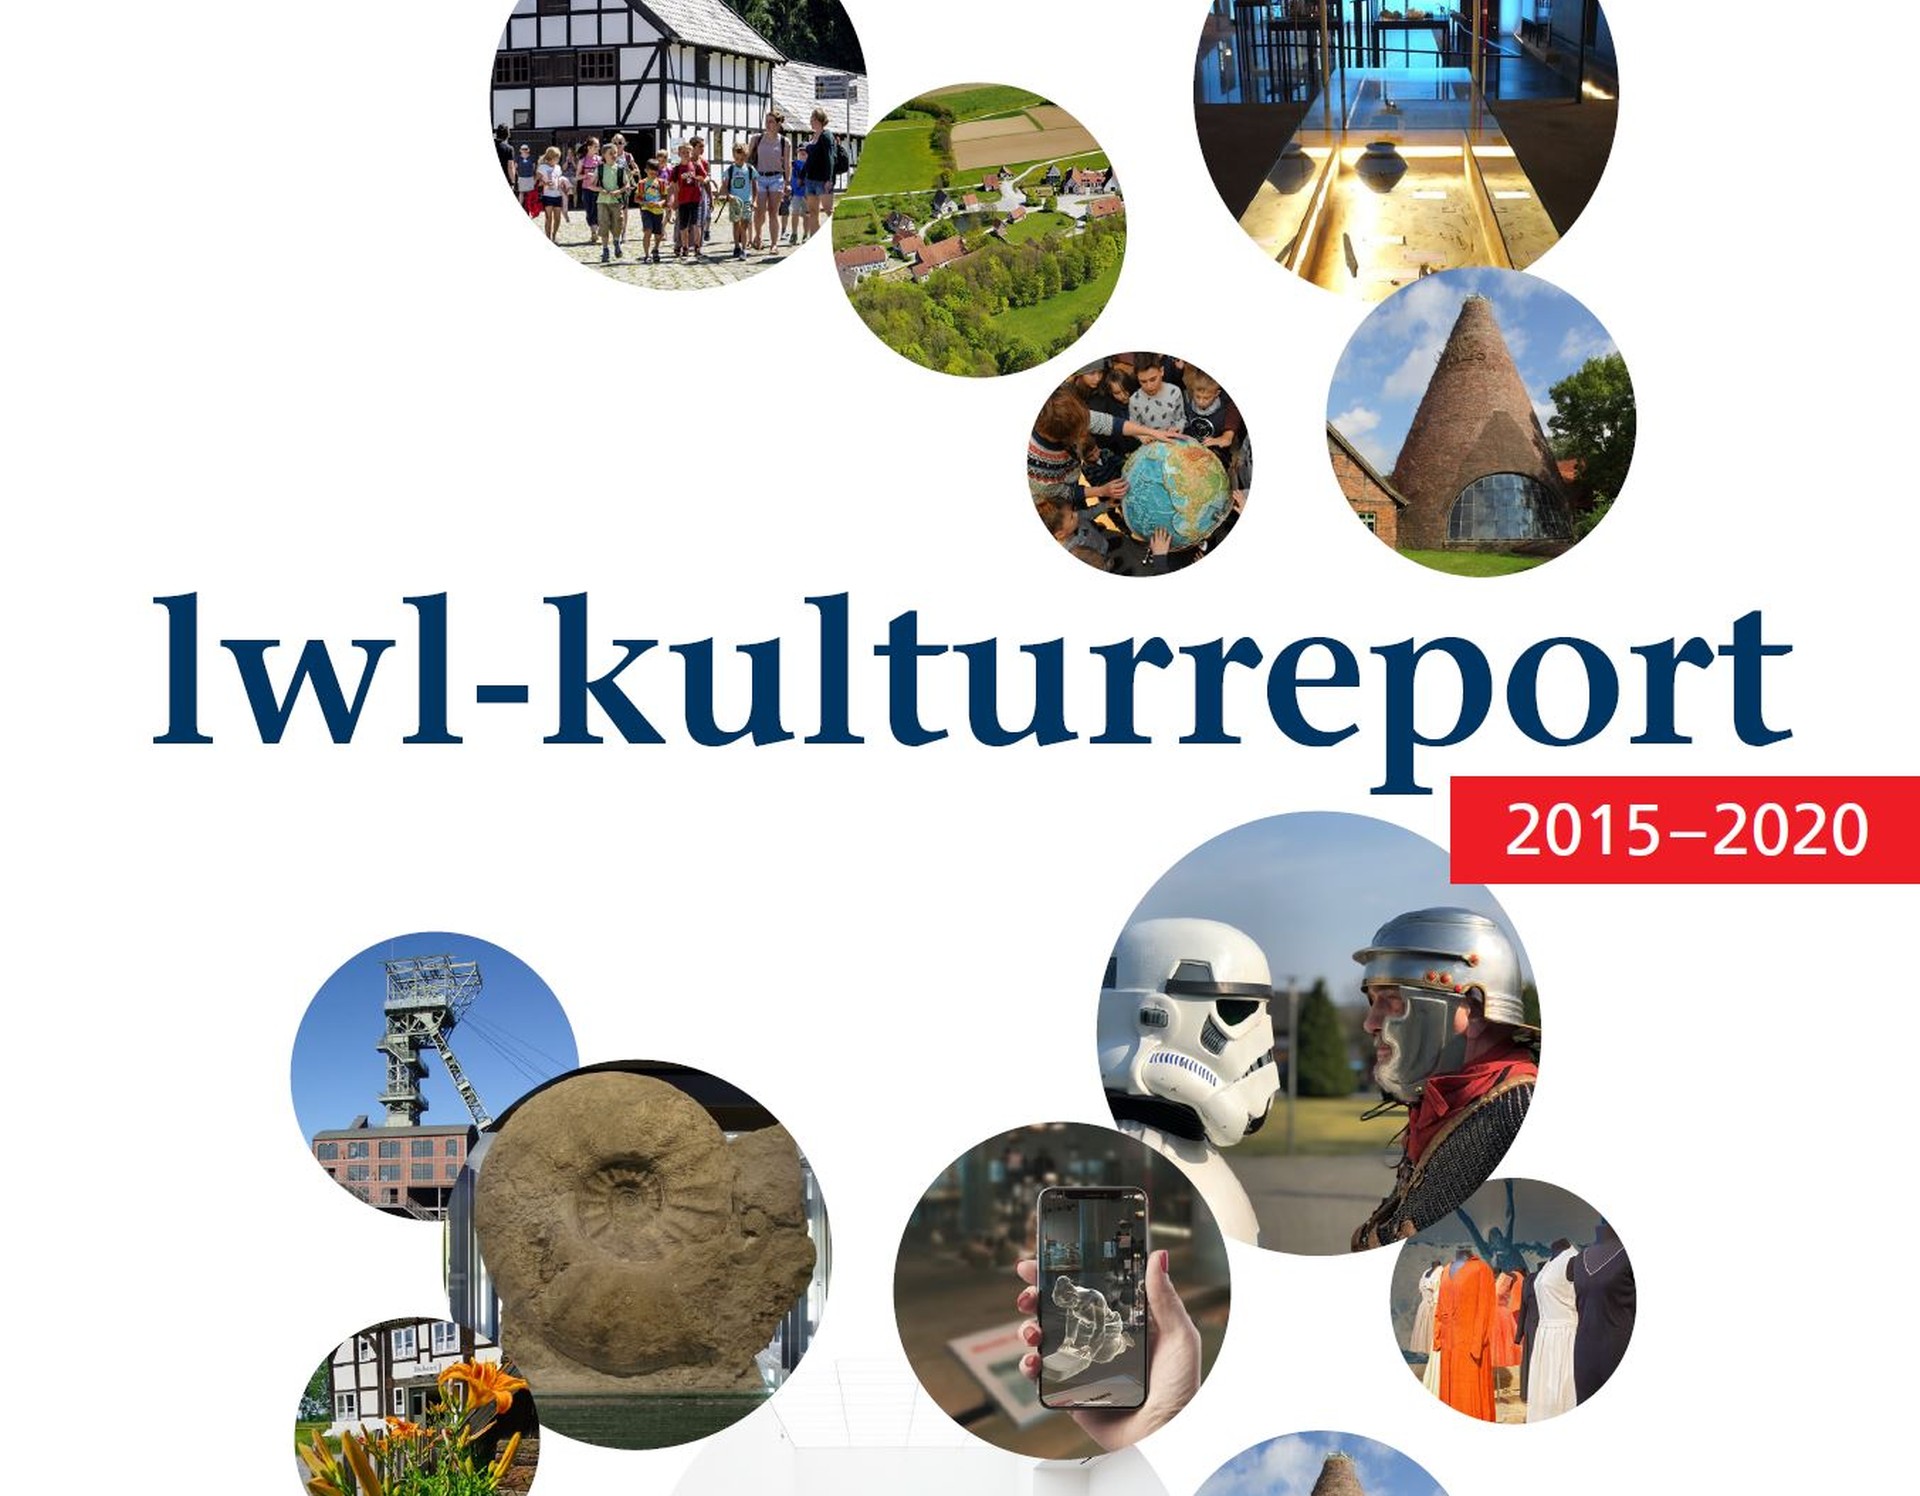 Das Deckblatt des aktuellen LWL-Kulturreports: Runde Fotos auf weißem Hintergrund. In der Mitte der Schriftzug "LWL-Kulturreport 2015-2020".